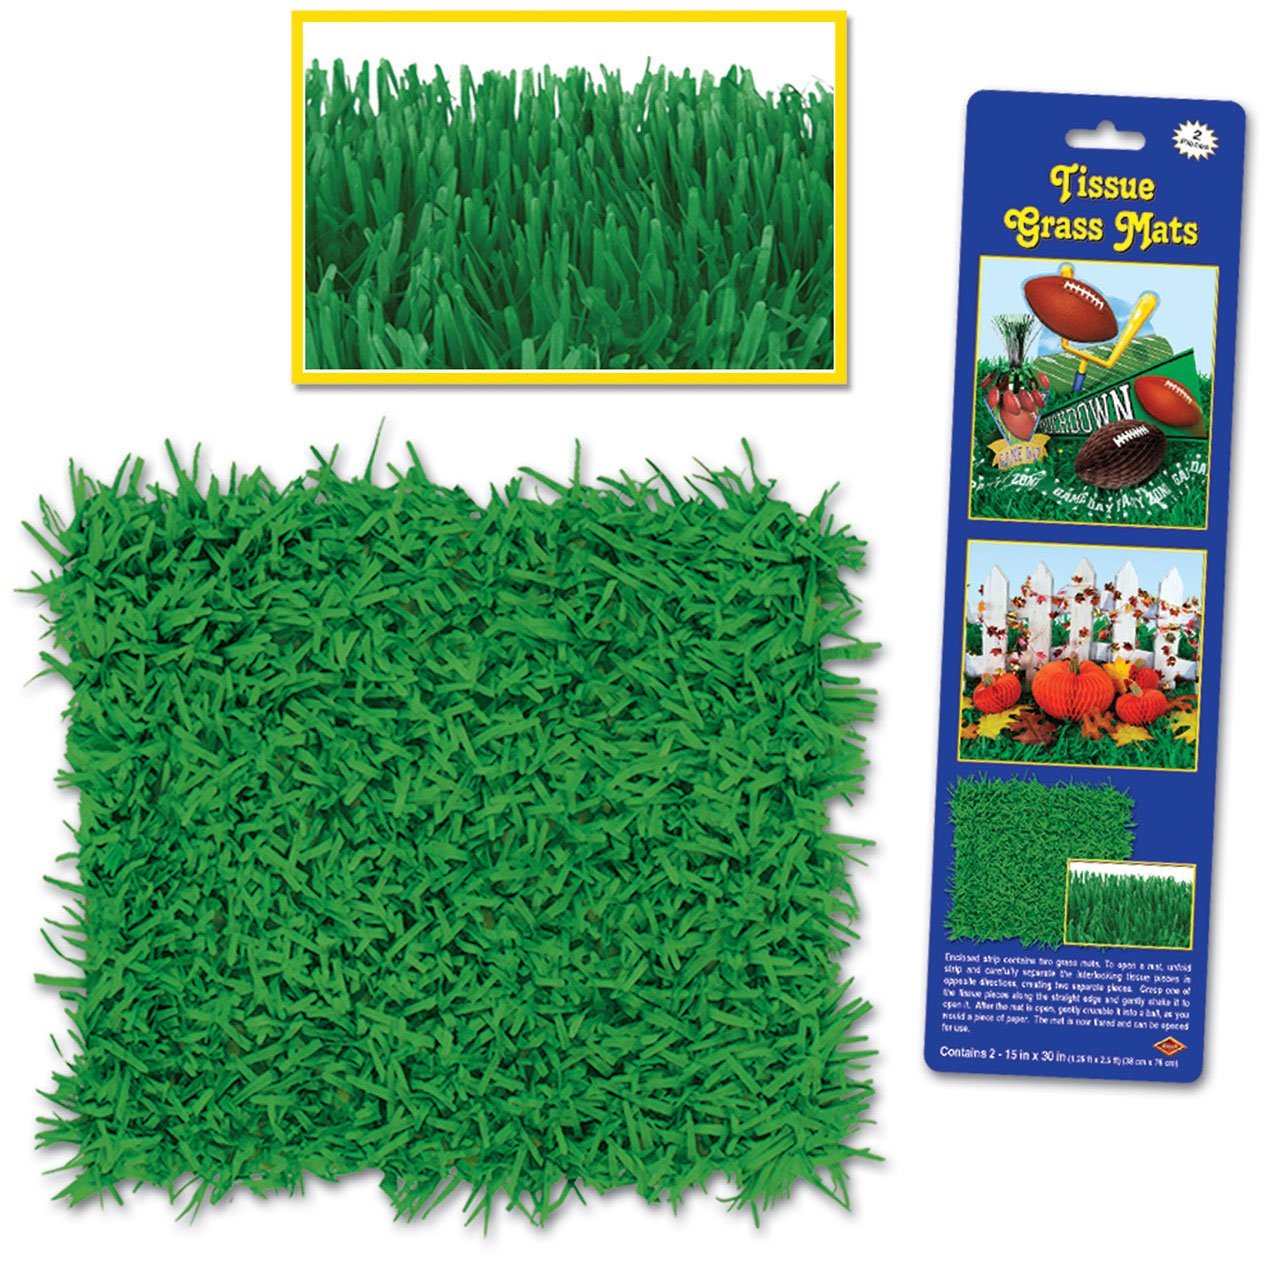 Tissue grass